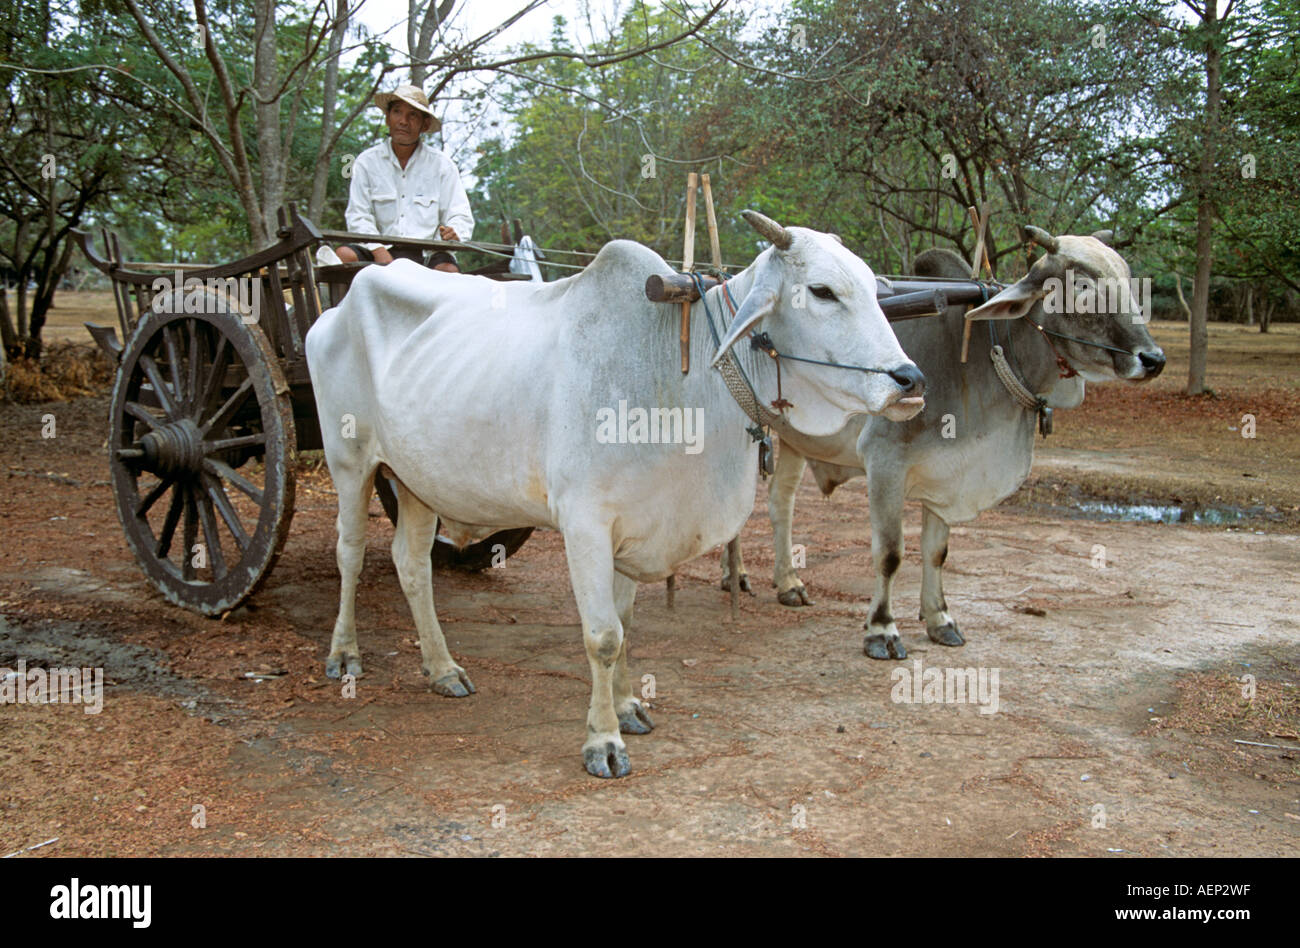 ox-cart-and-farmer-sukhothai-thailand-AEP2WF.jpg